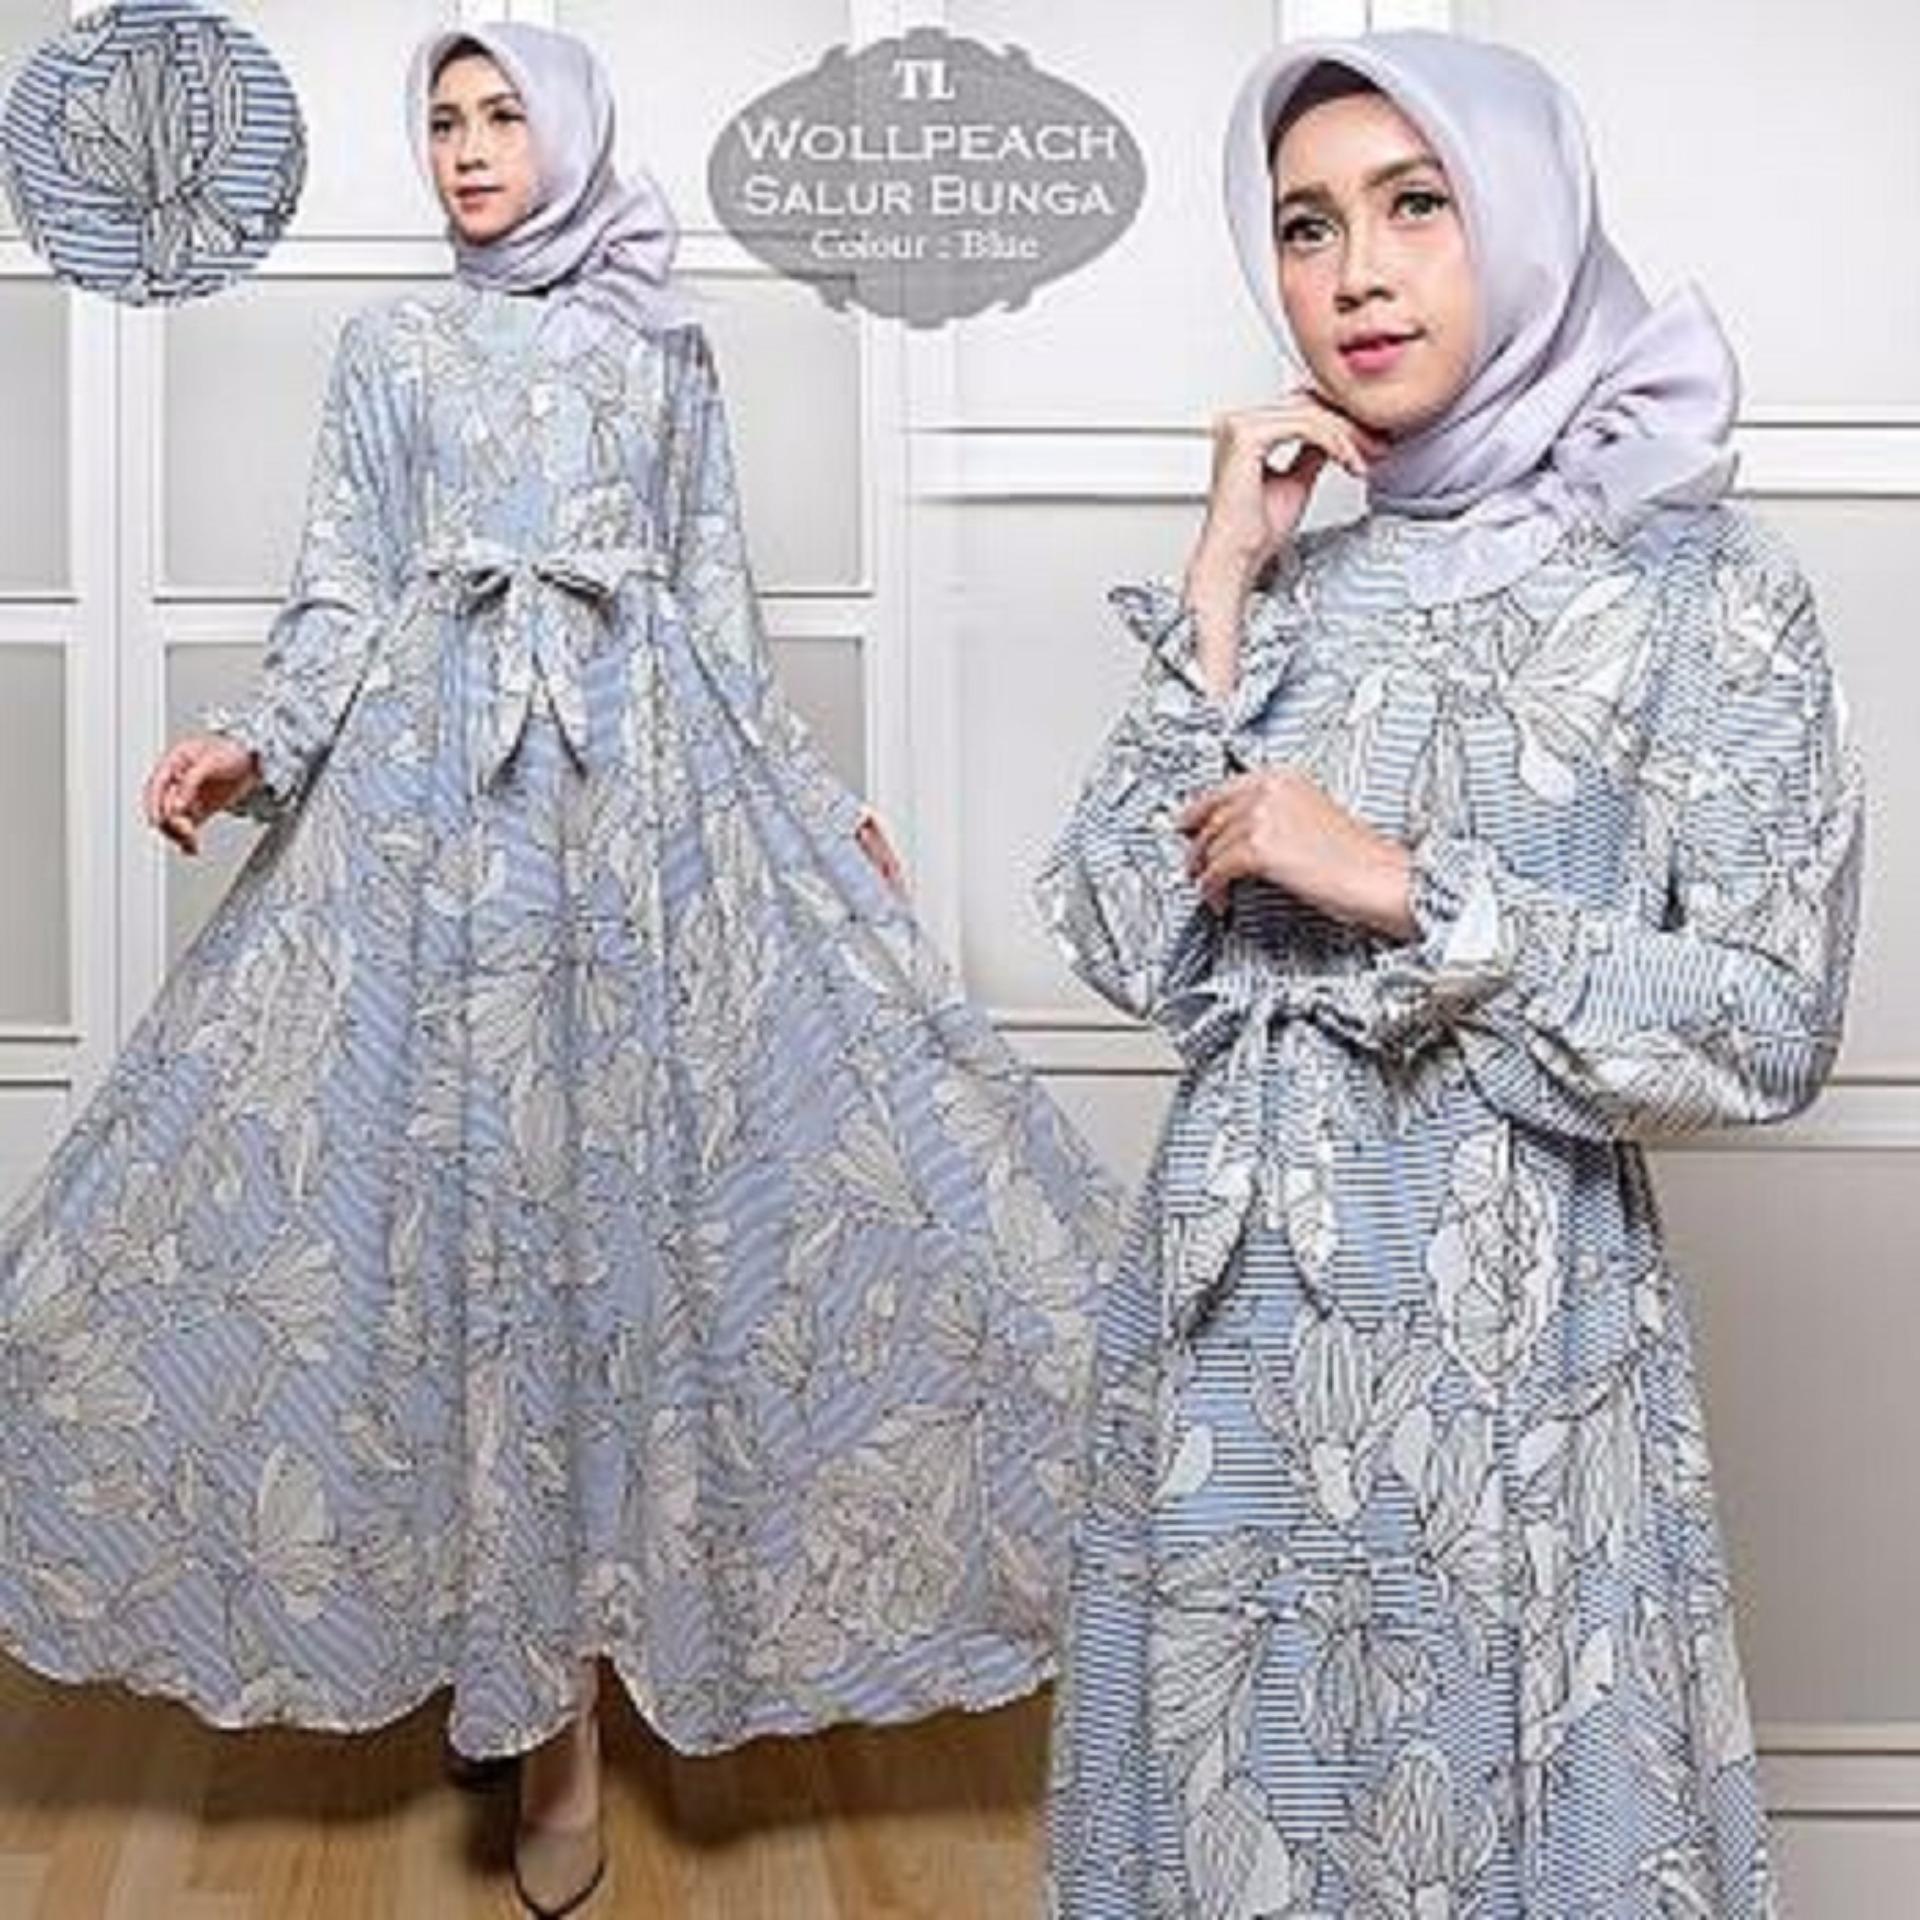 Afifahstore Gamis Syari Muslim Wanita Busui Gaun Muslimah Maxi Dress Lengan Panjang Wollpeach